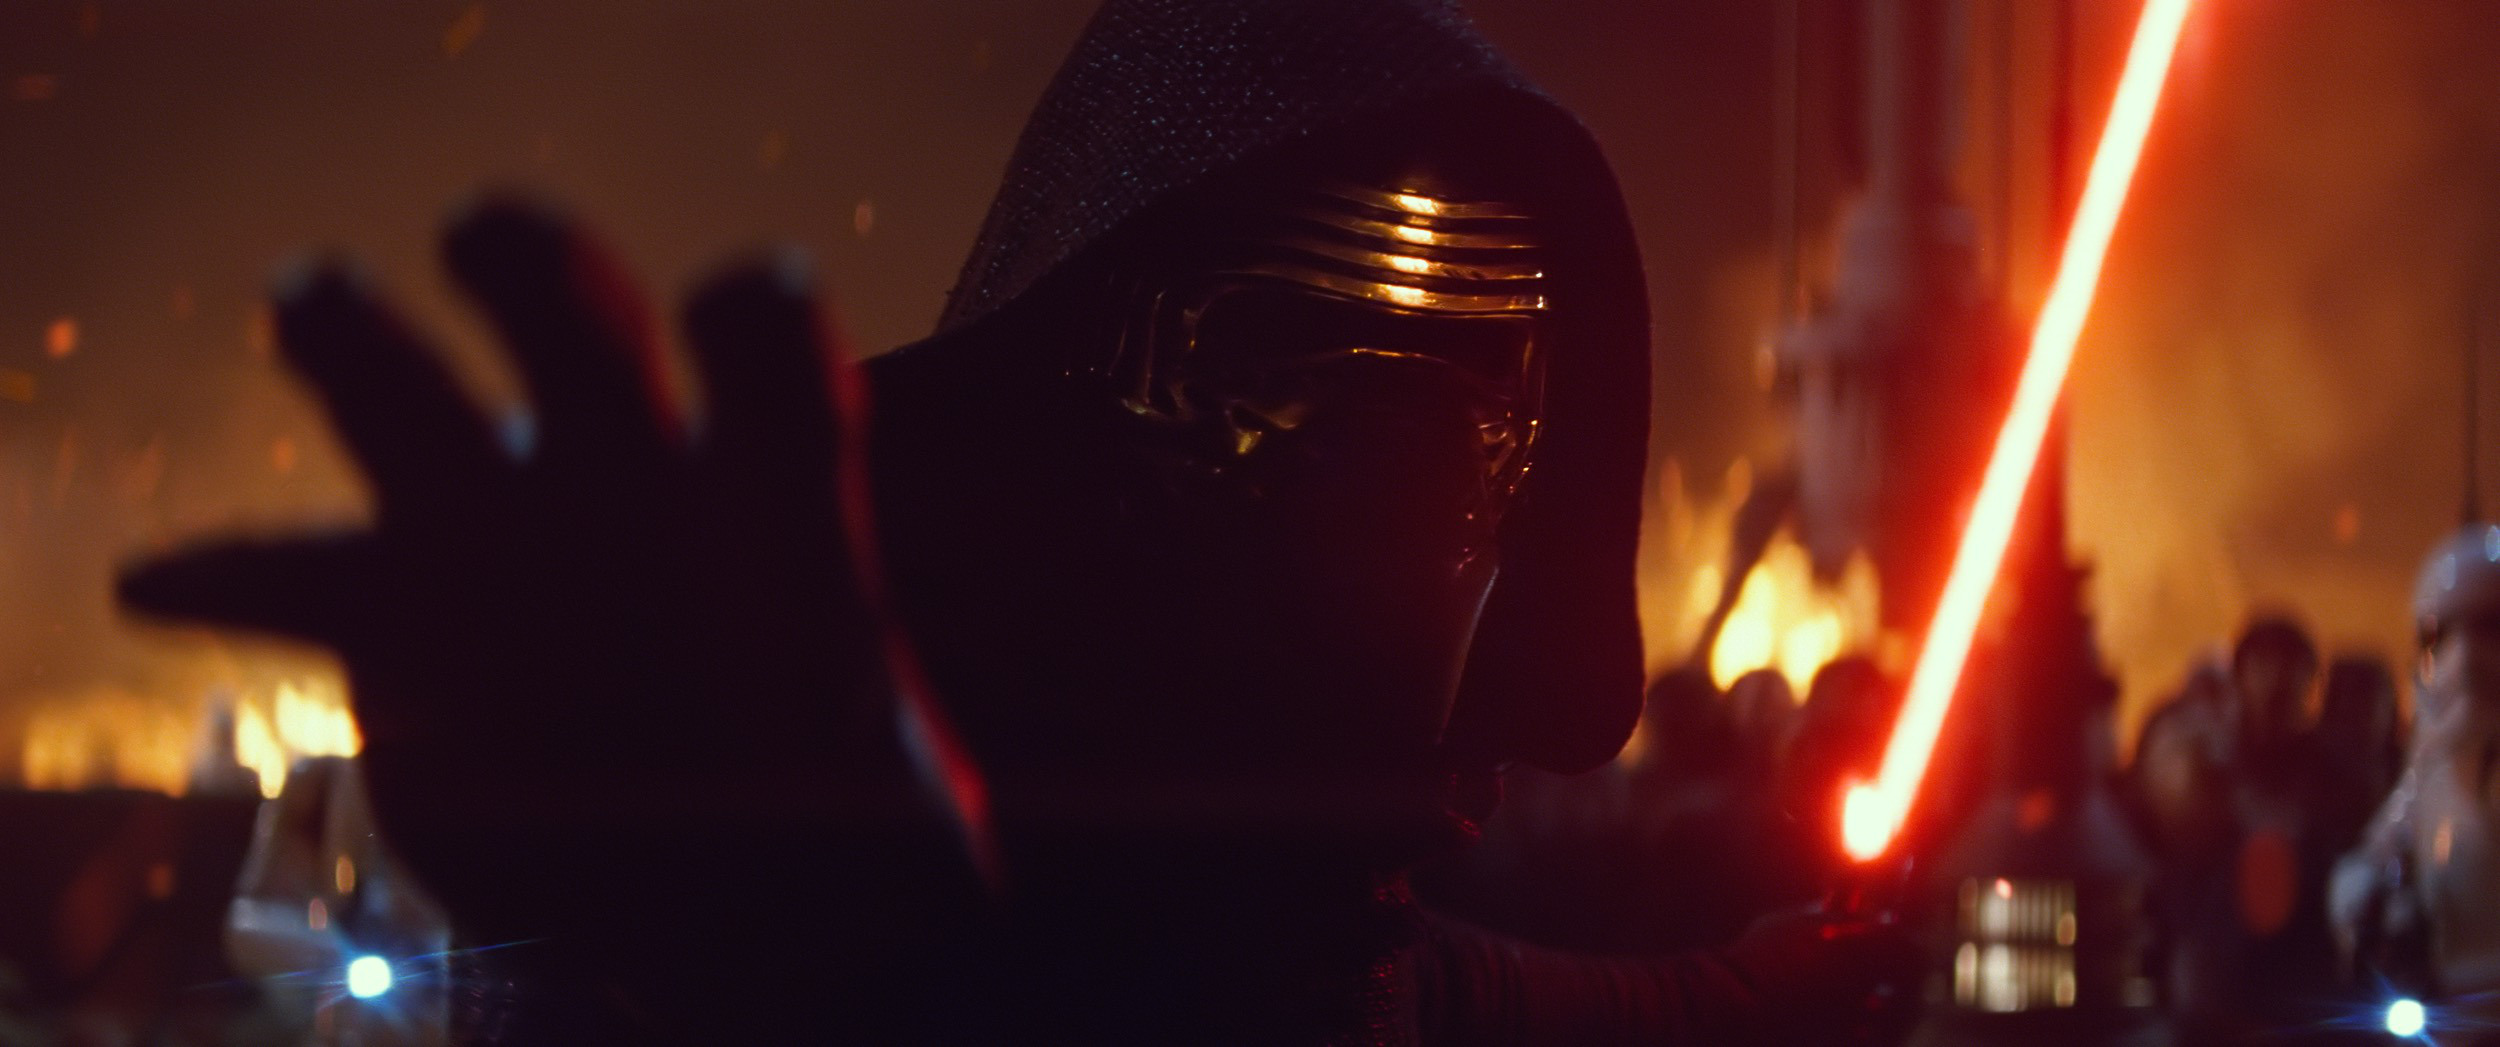 Star Wars: The Force Awakens Ph: Film Frame ©Lucasfilm 2015